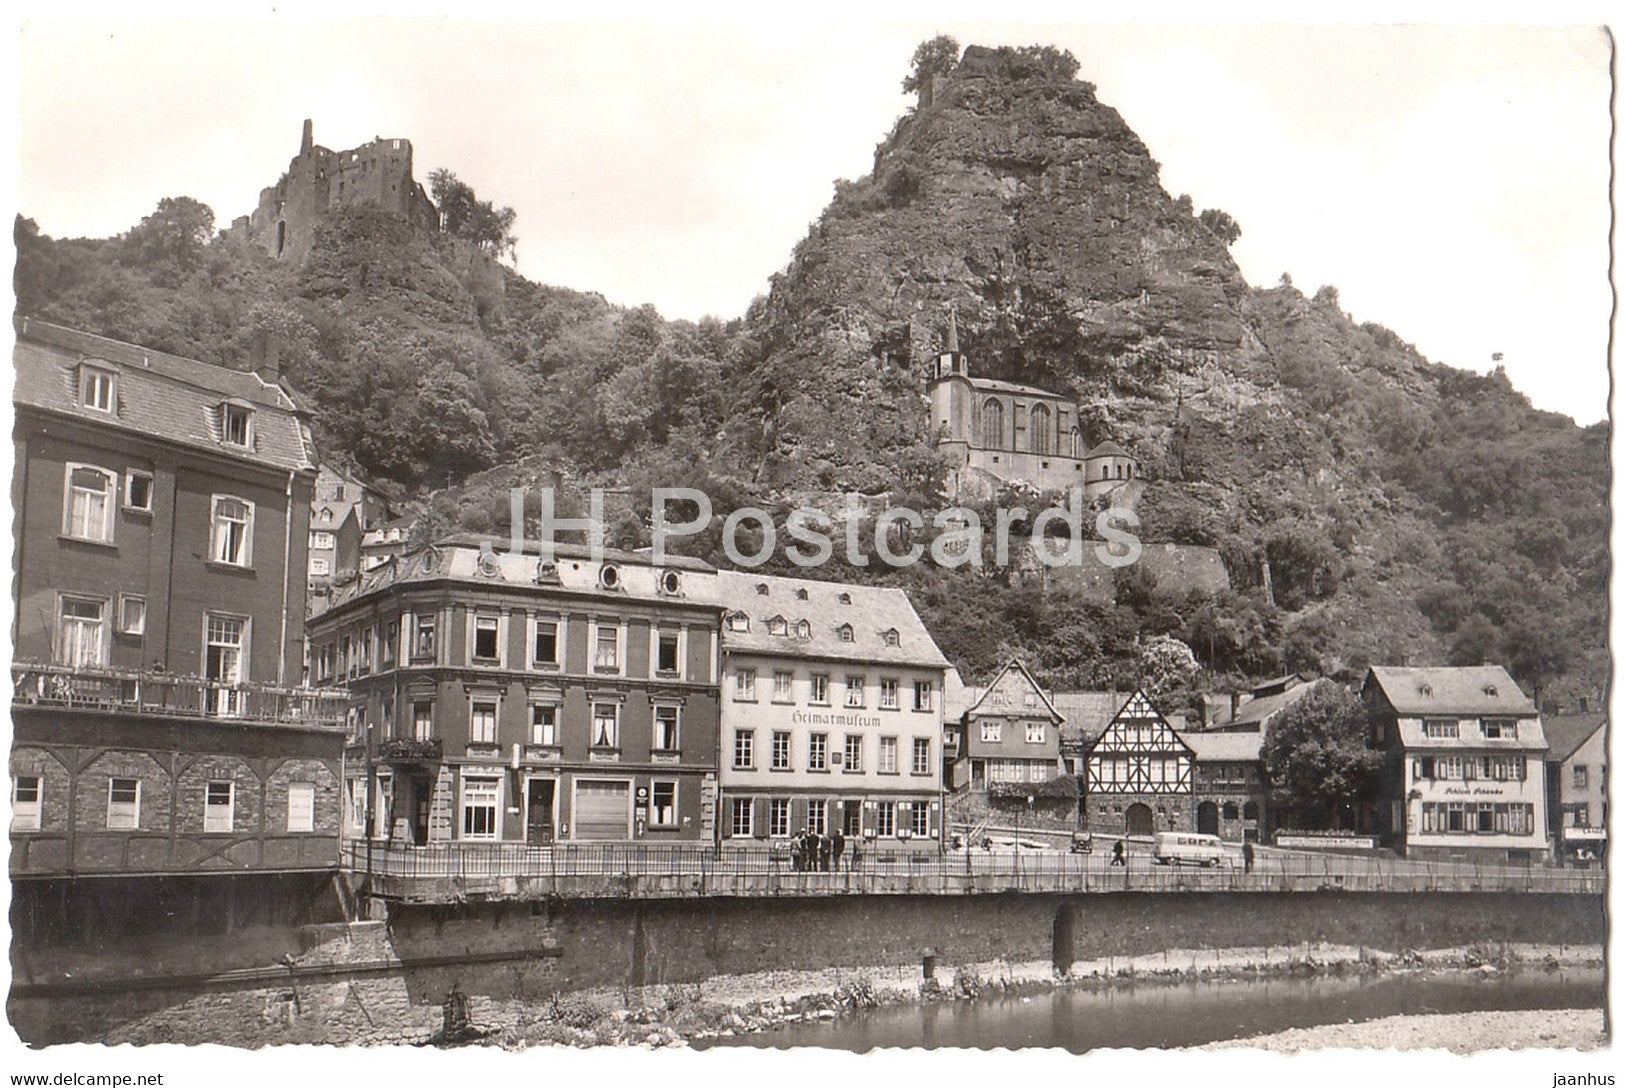 Idar Oberstein - Alte und neue Burgruine und Felsenkirche - Germany - unused - JH Postcards